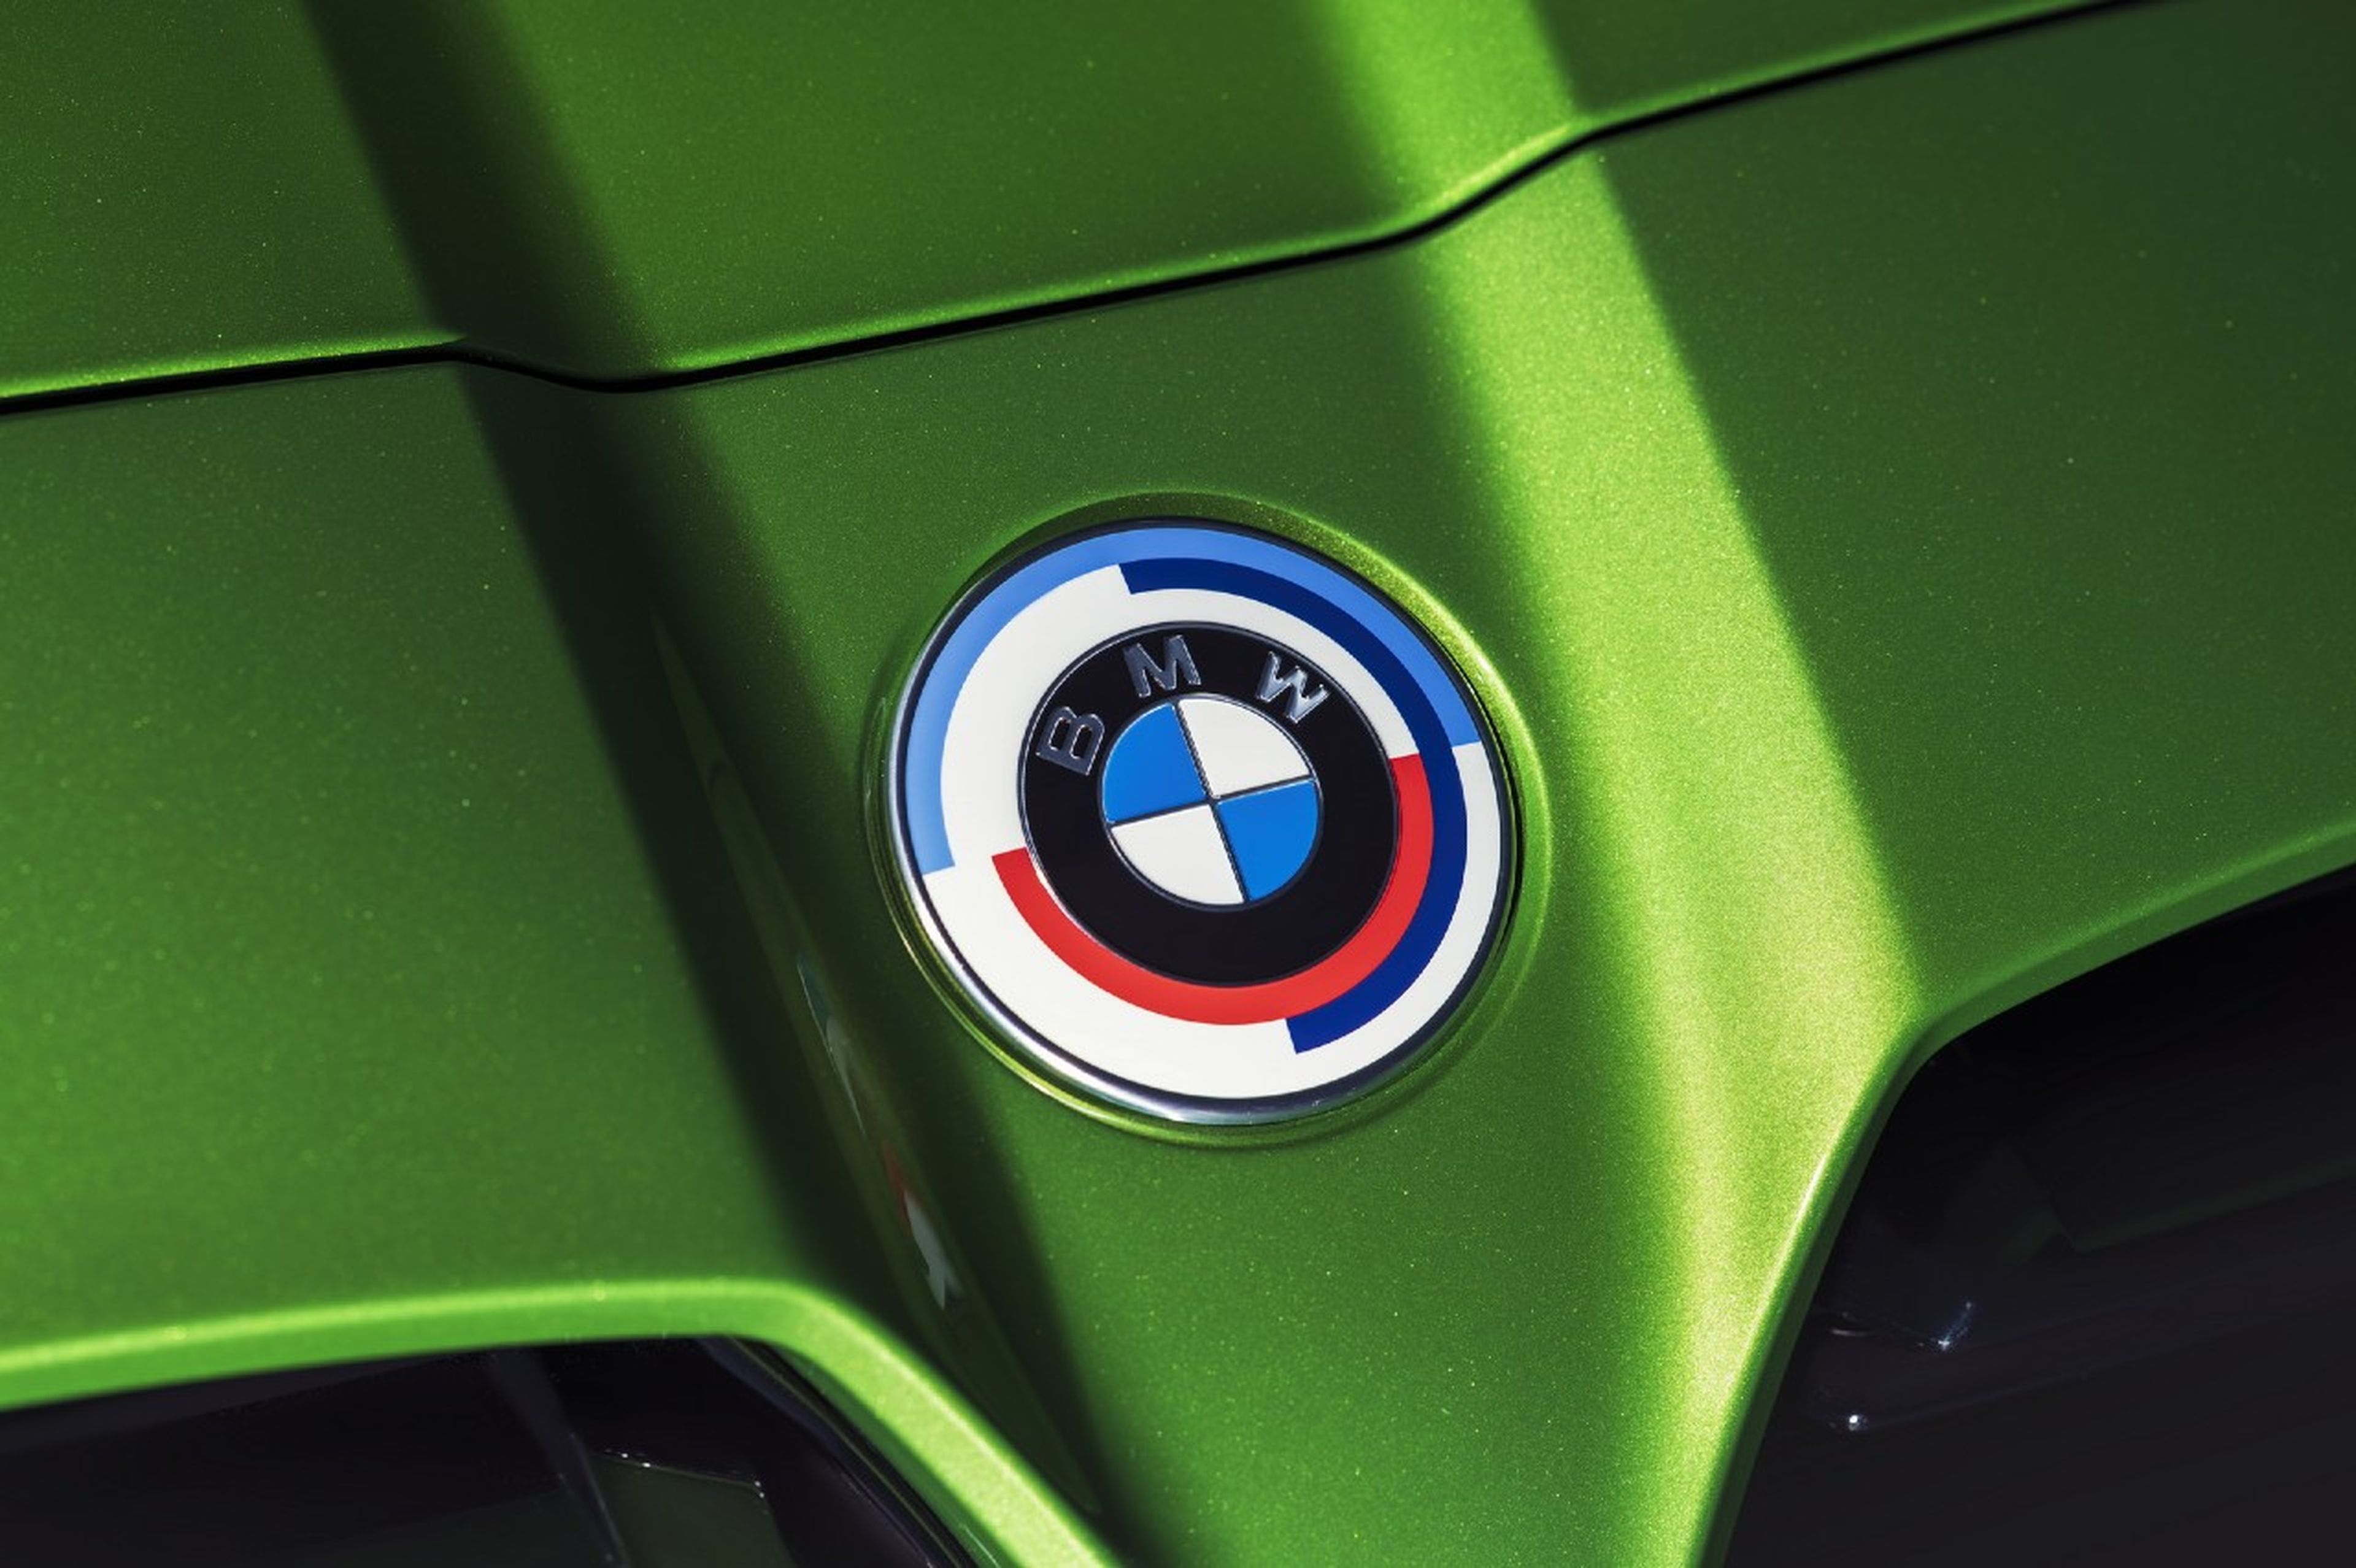 Así es el nuevo logo de BMW M